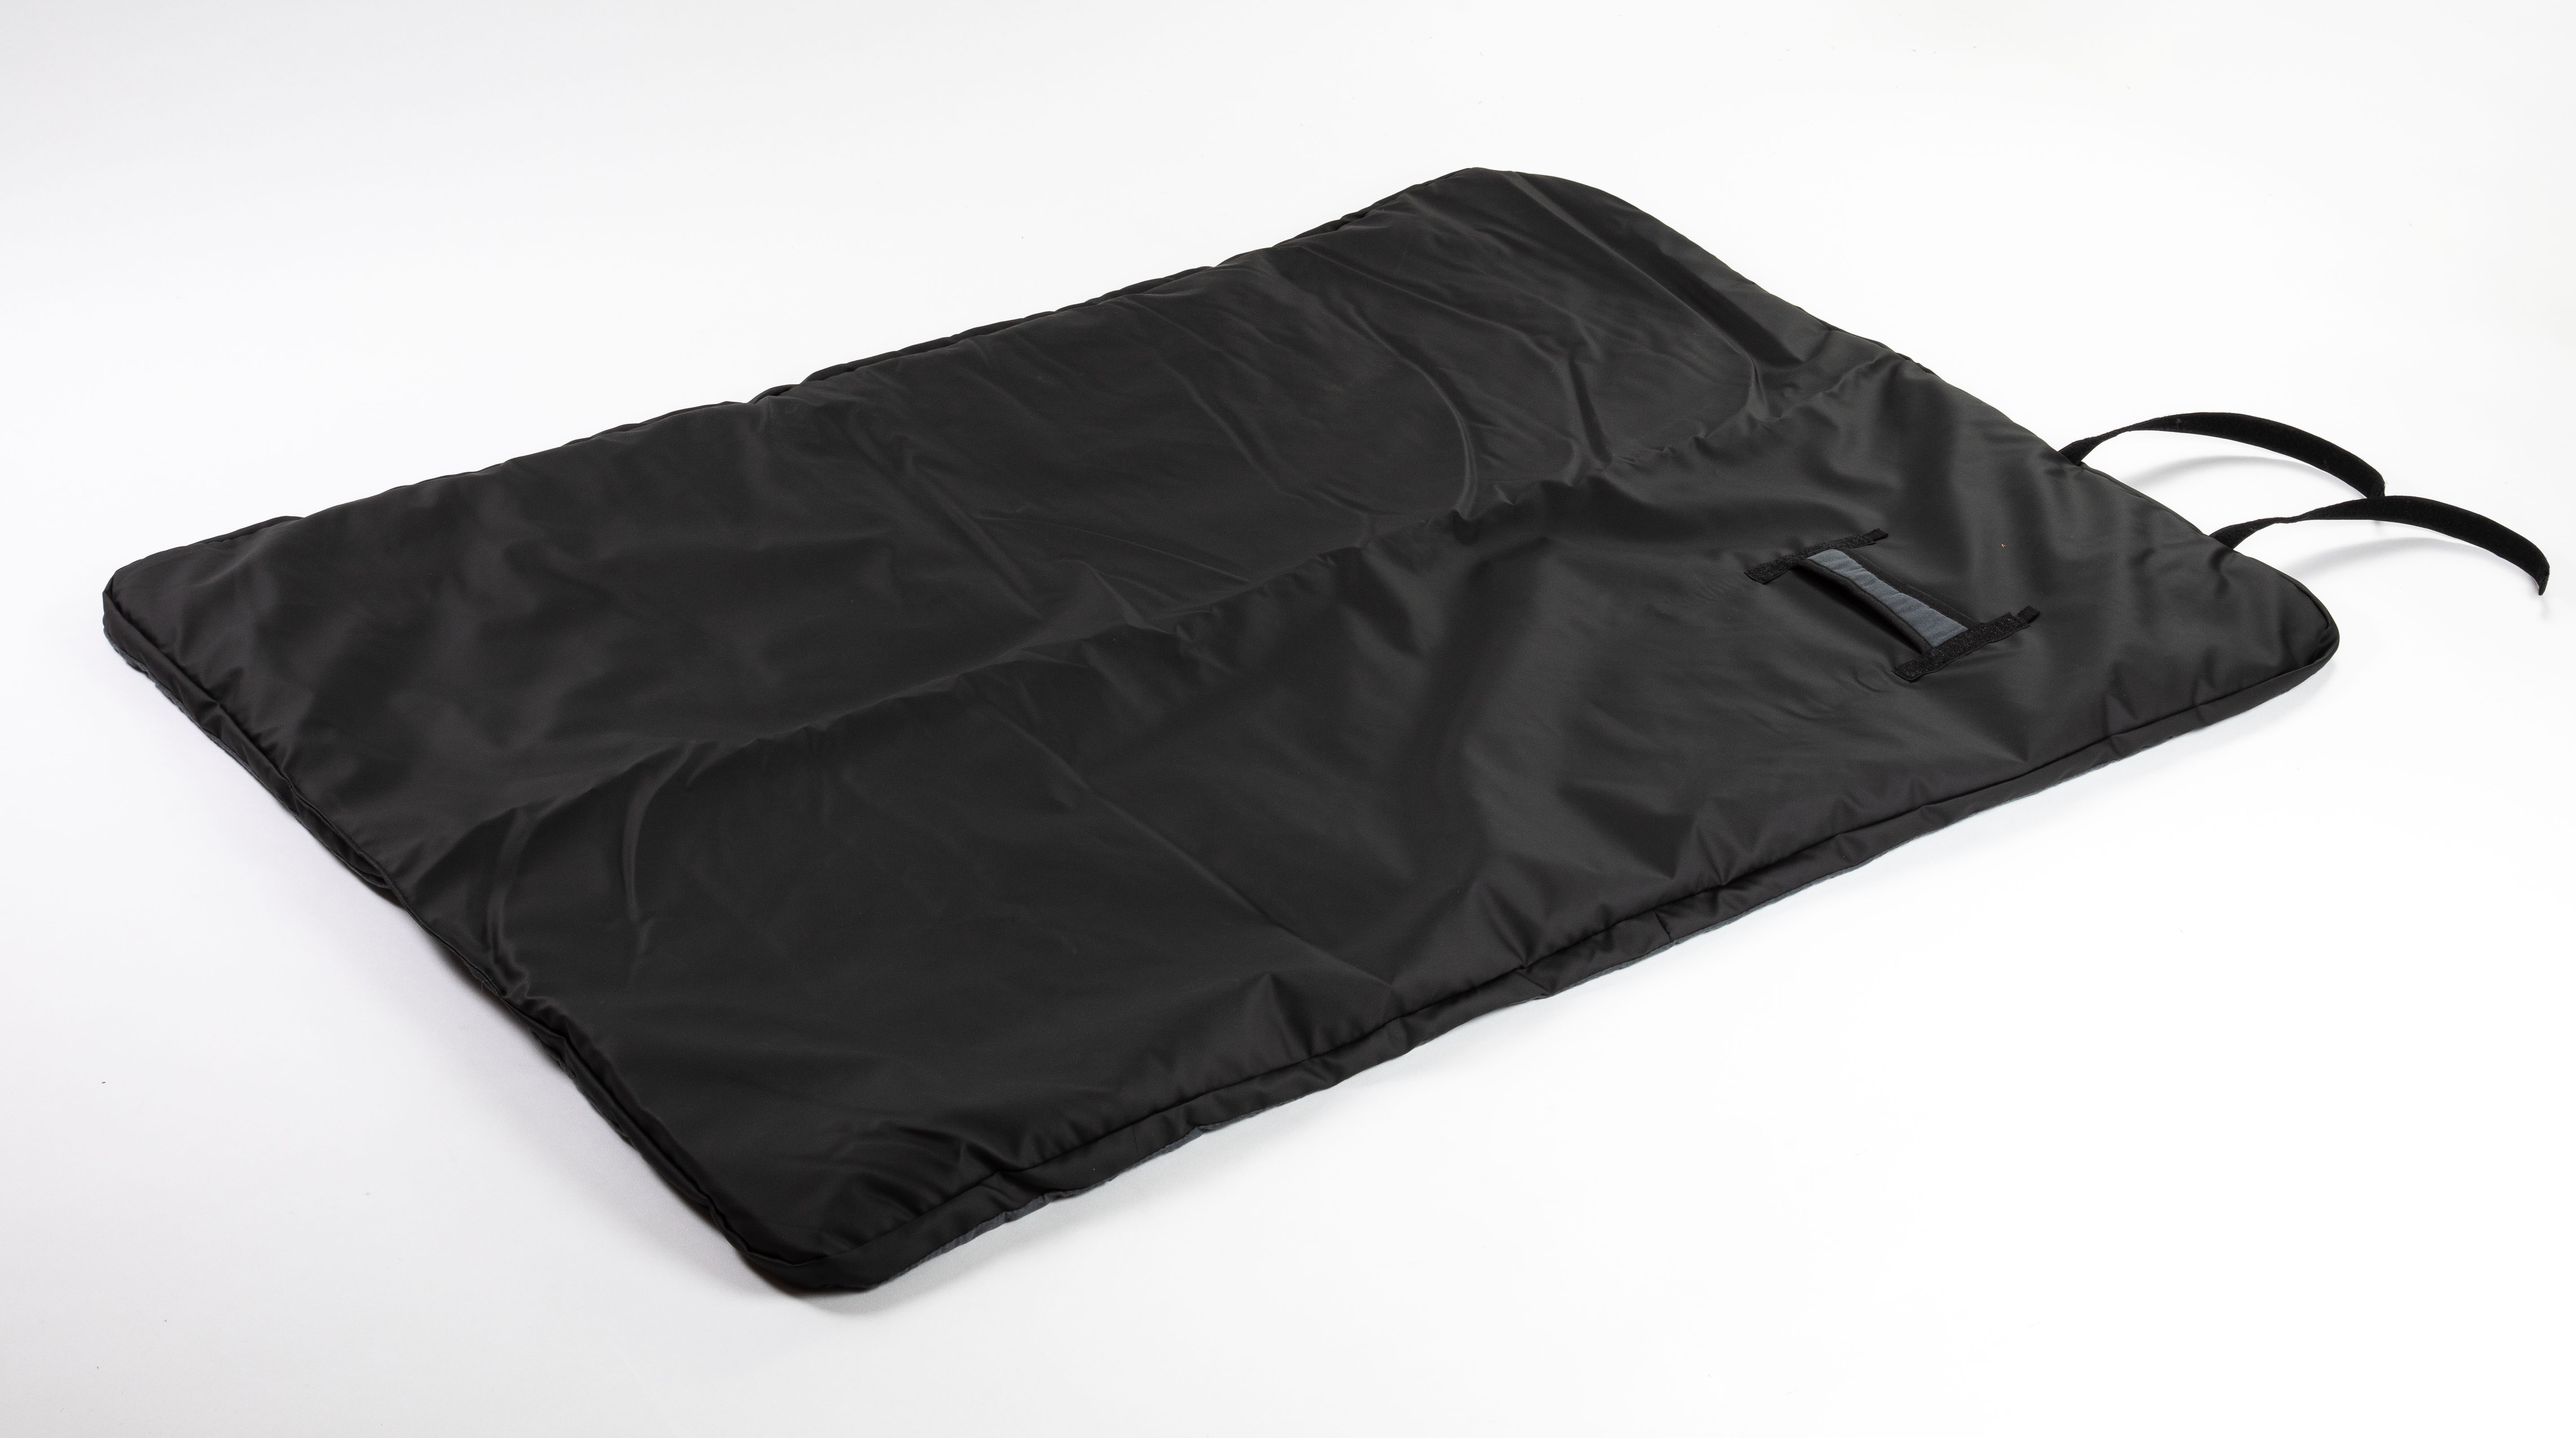 Outchair Comforter - die Heizdecke für dein Dachzelt oder Zelt